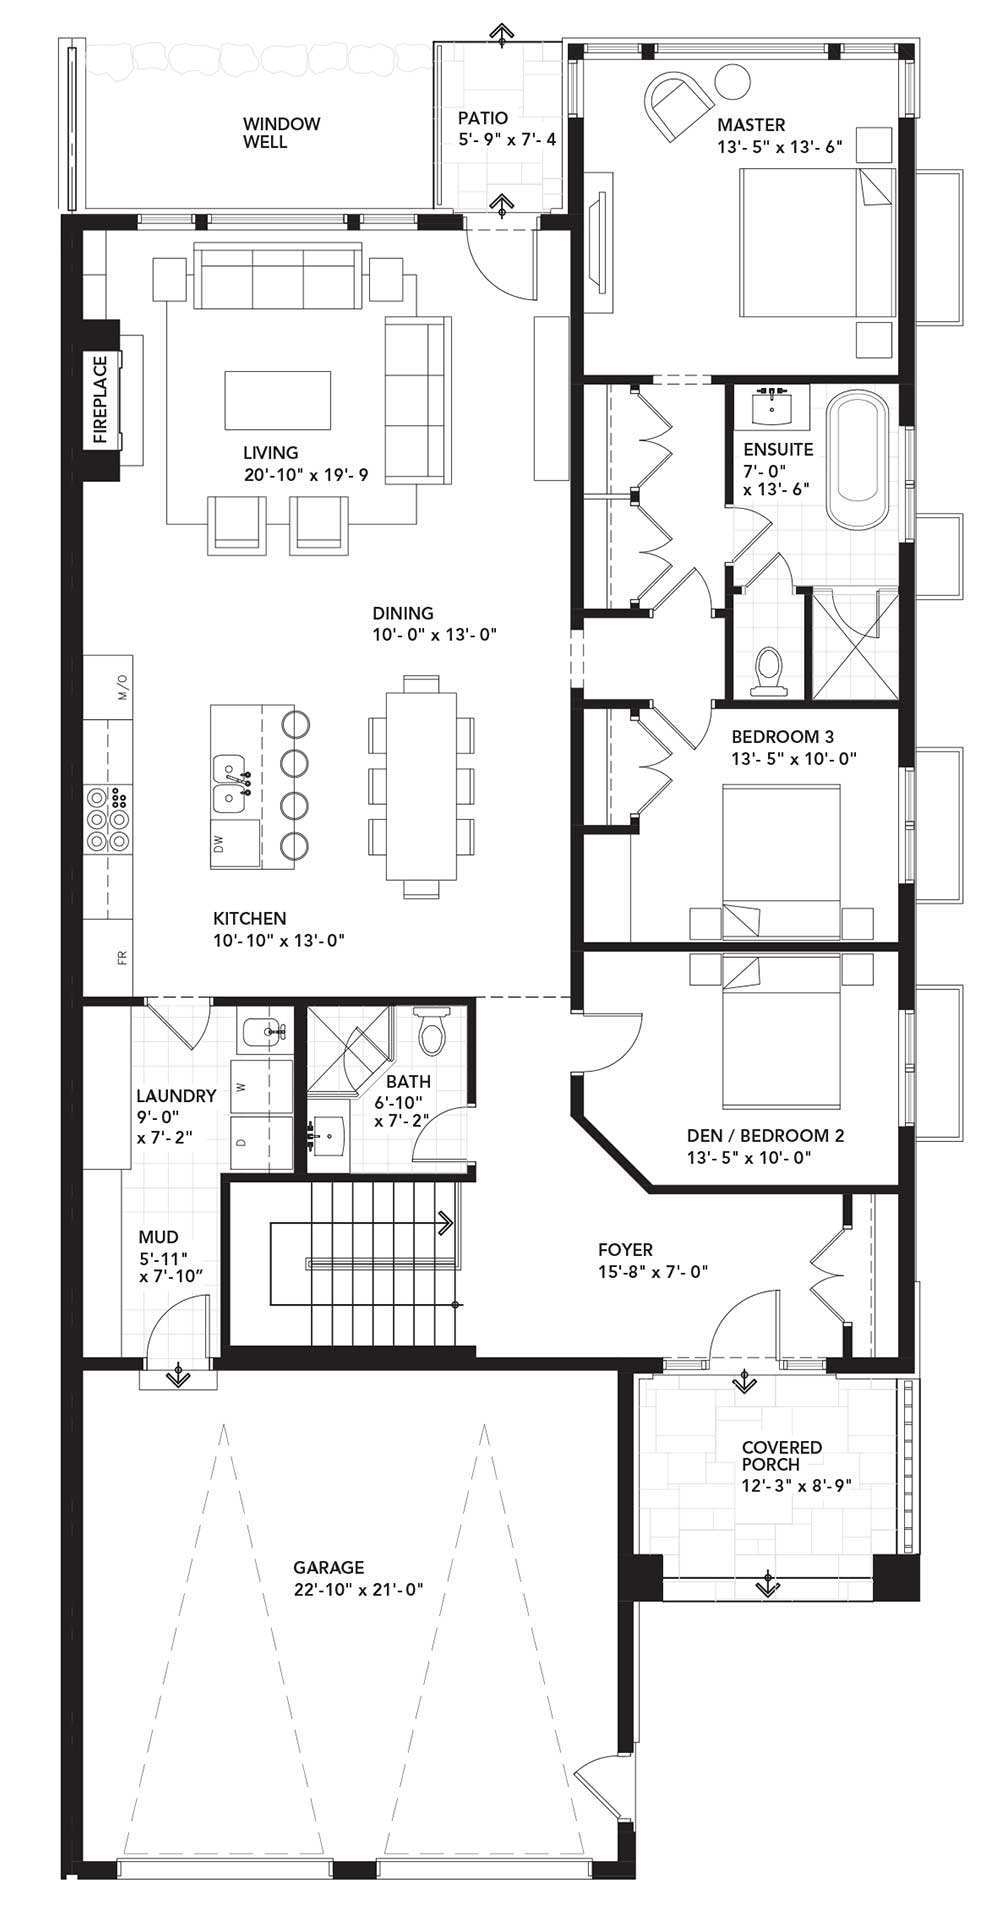 Main Floor Plan - Three Bedroom - Right Unit